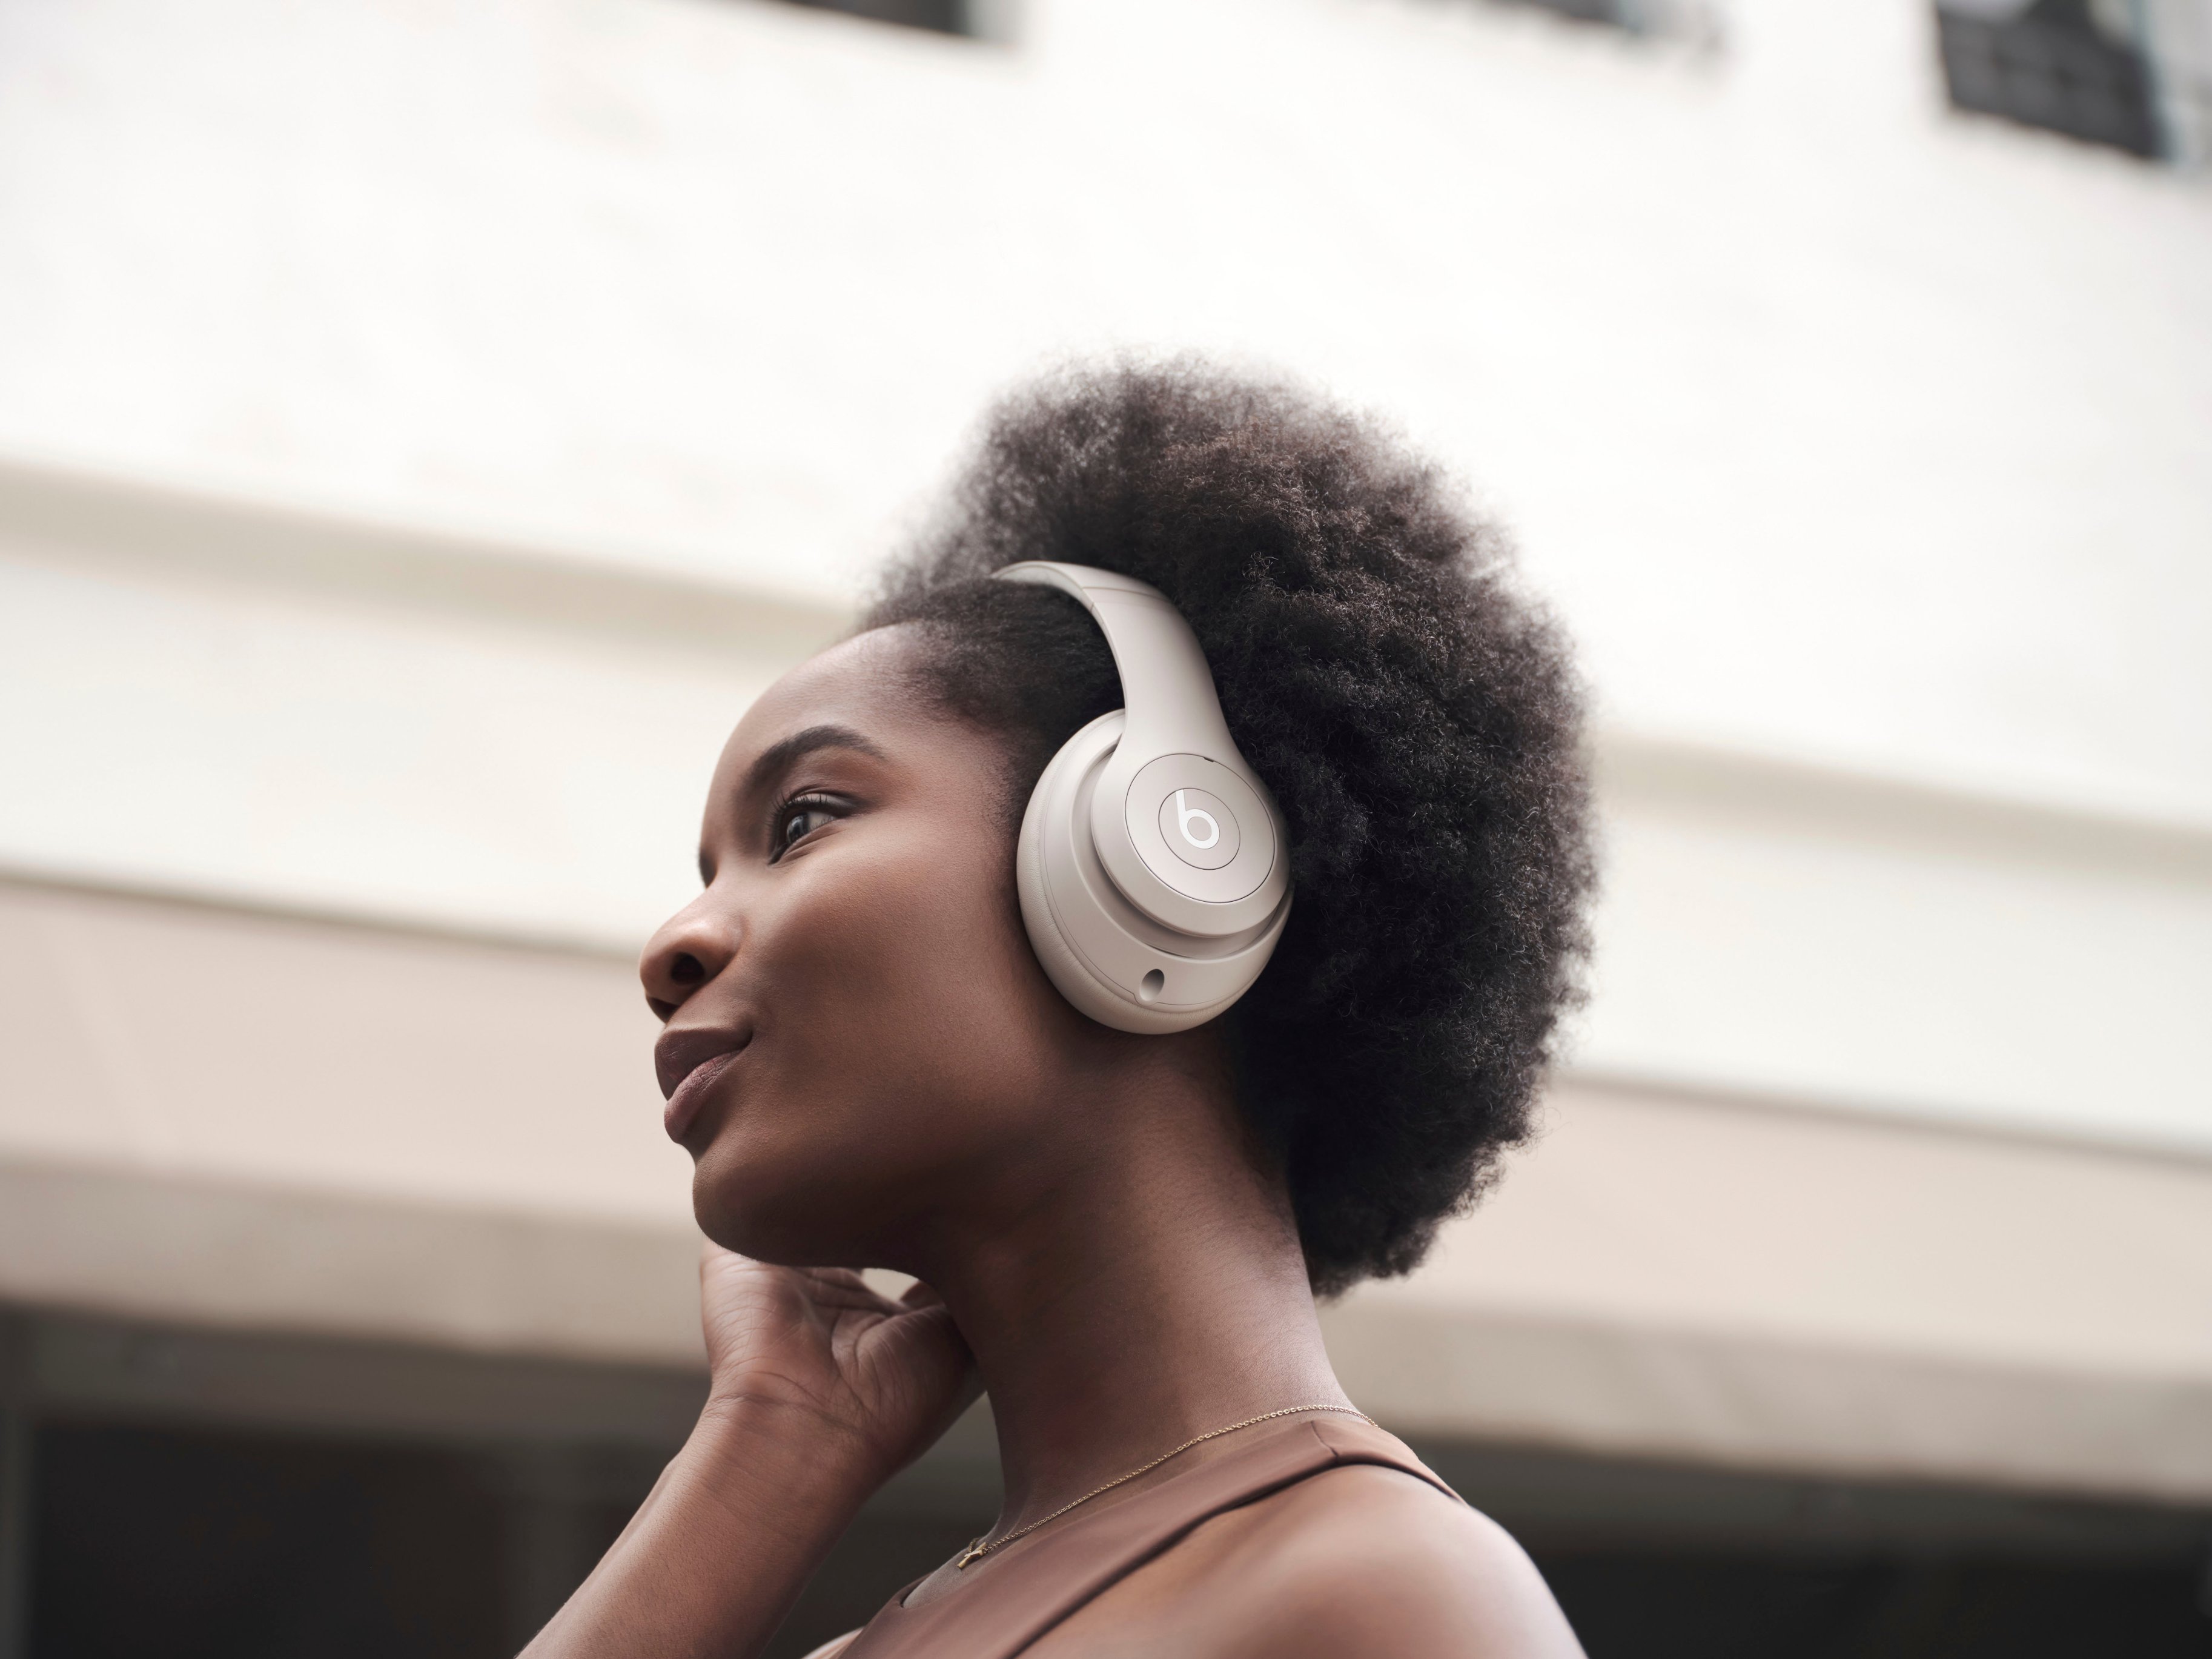 Beats Studio Pro Wireless Headphones — Sandstone